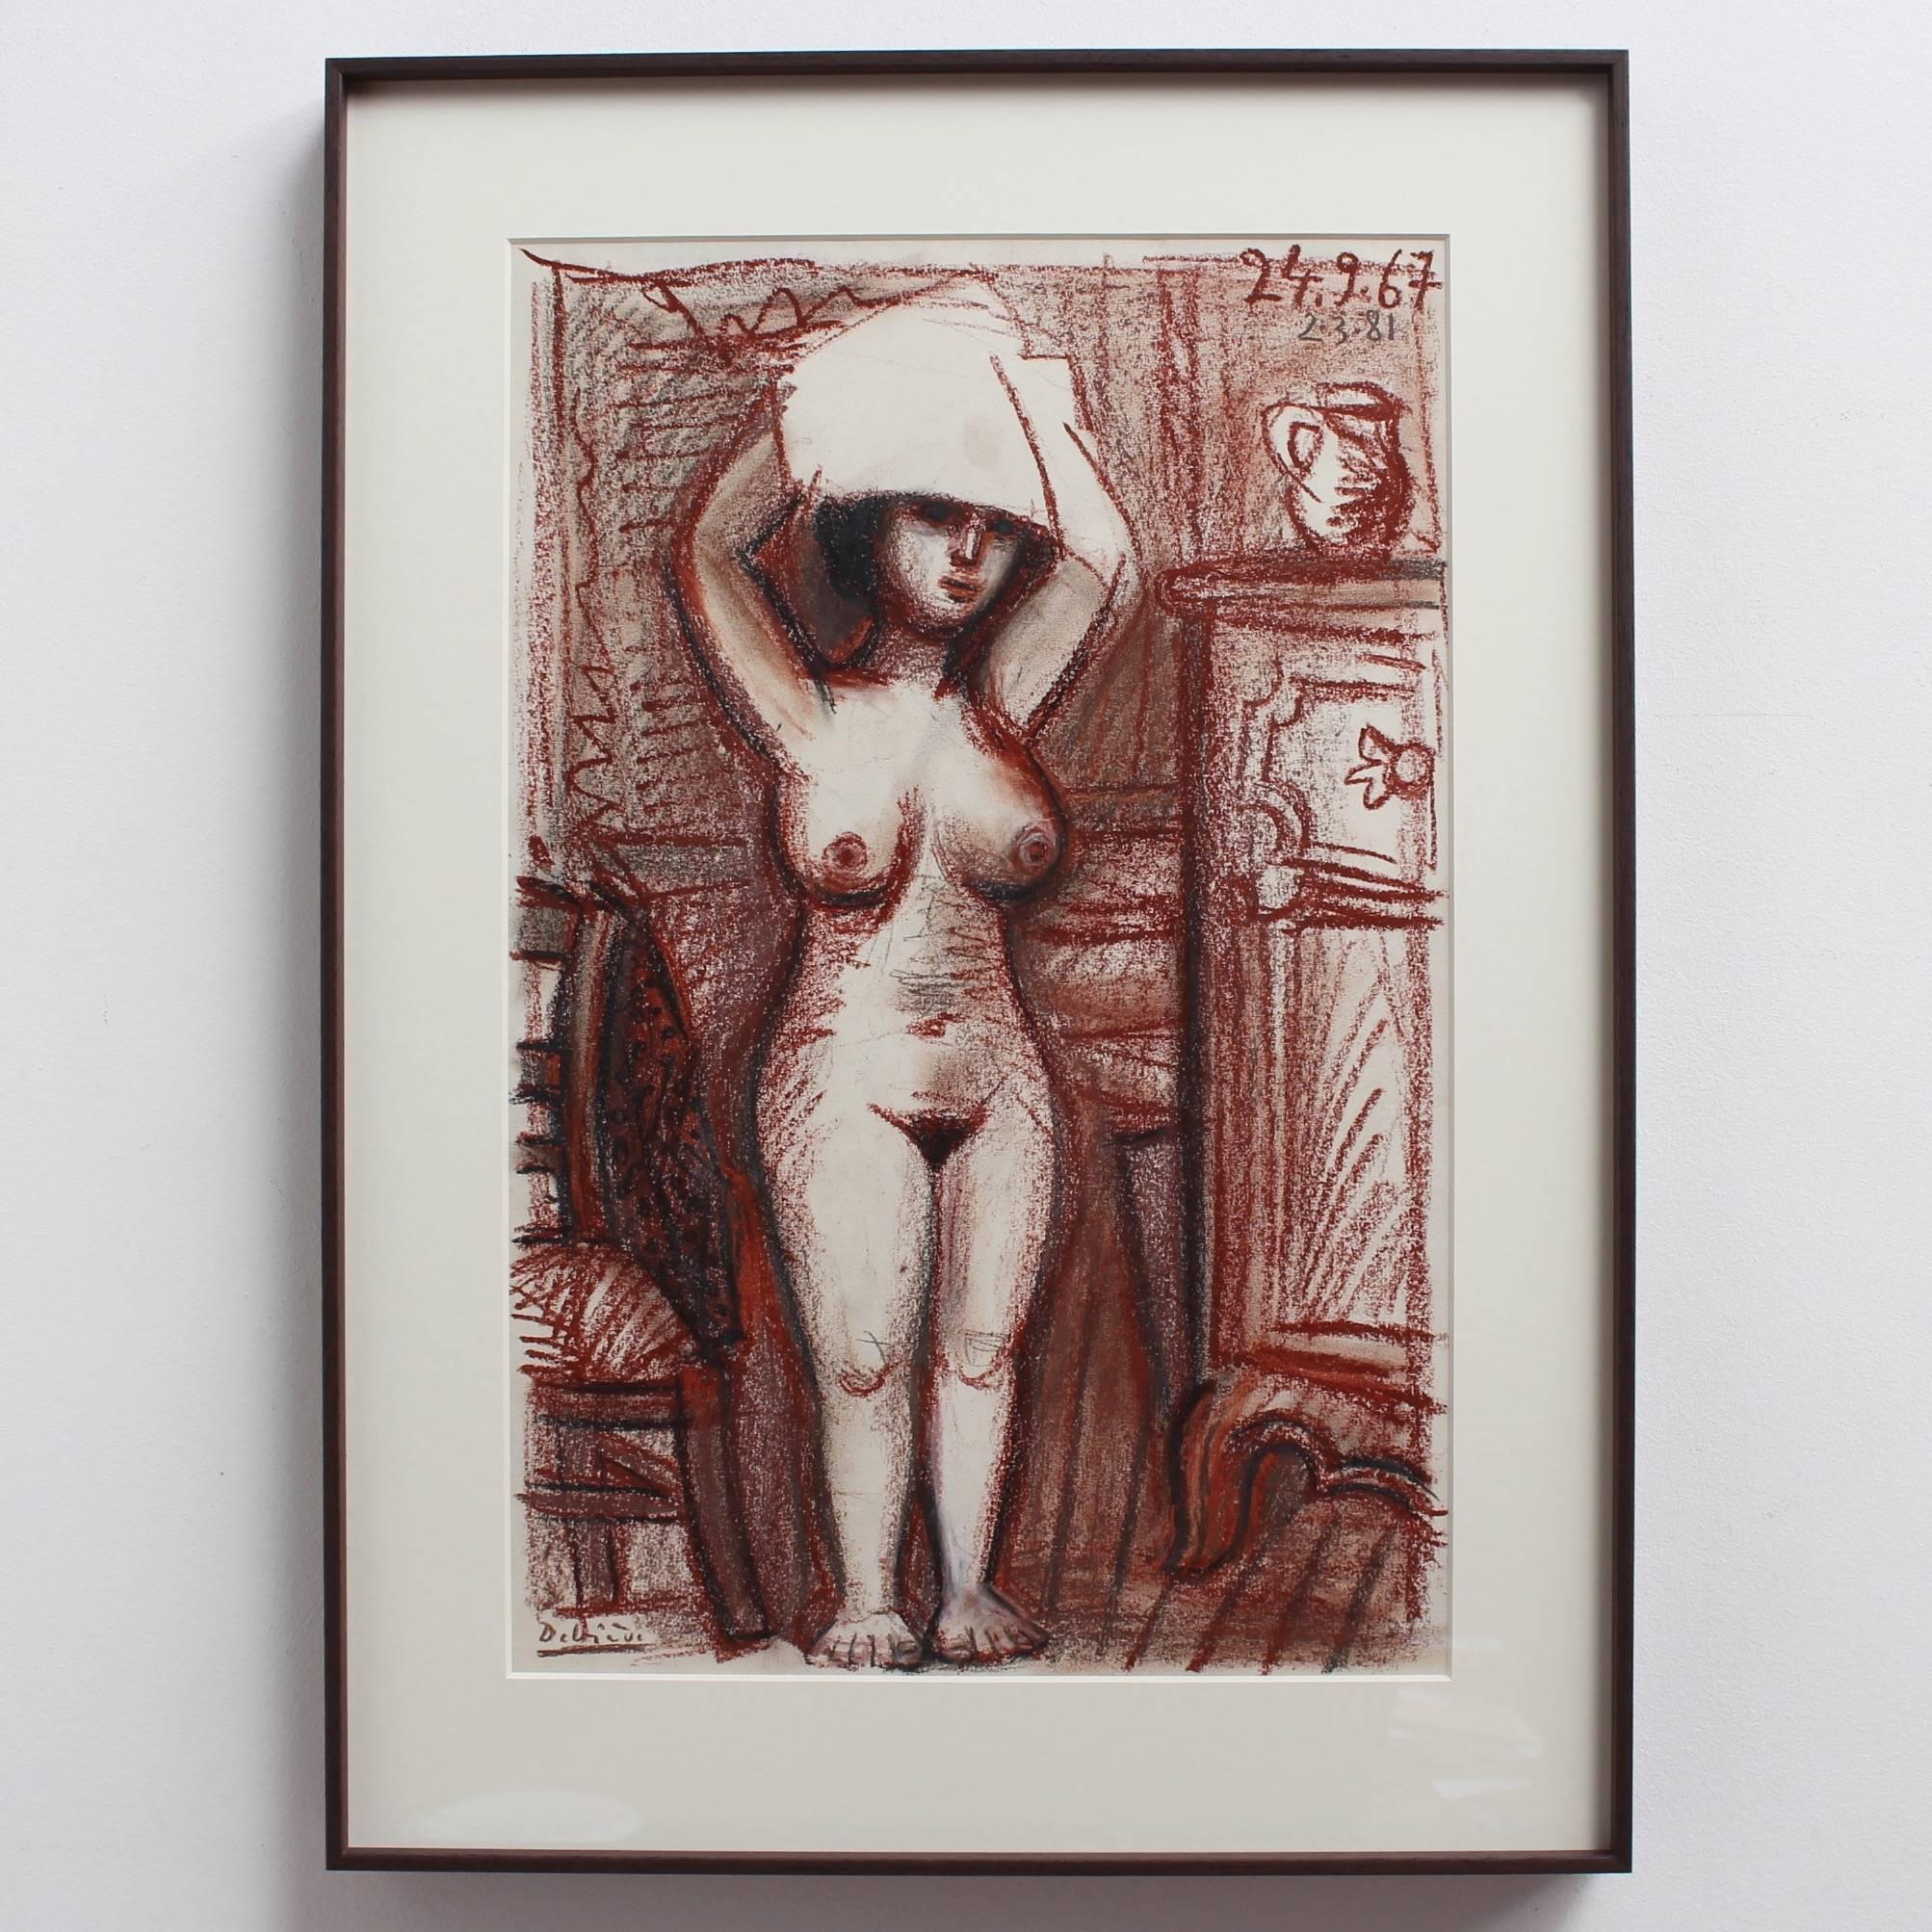 Nudefarbene Frau trocknet ihr Haar – Painting von Raymond Debieve